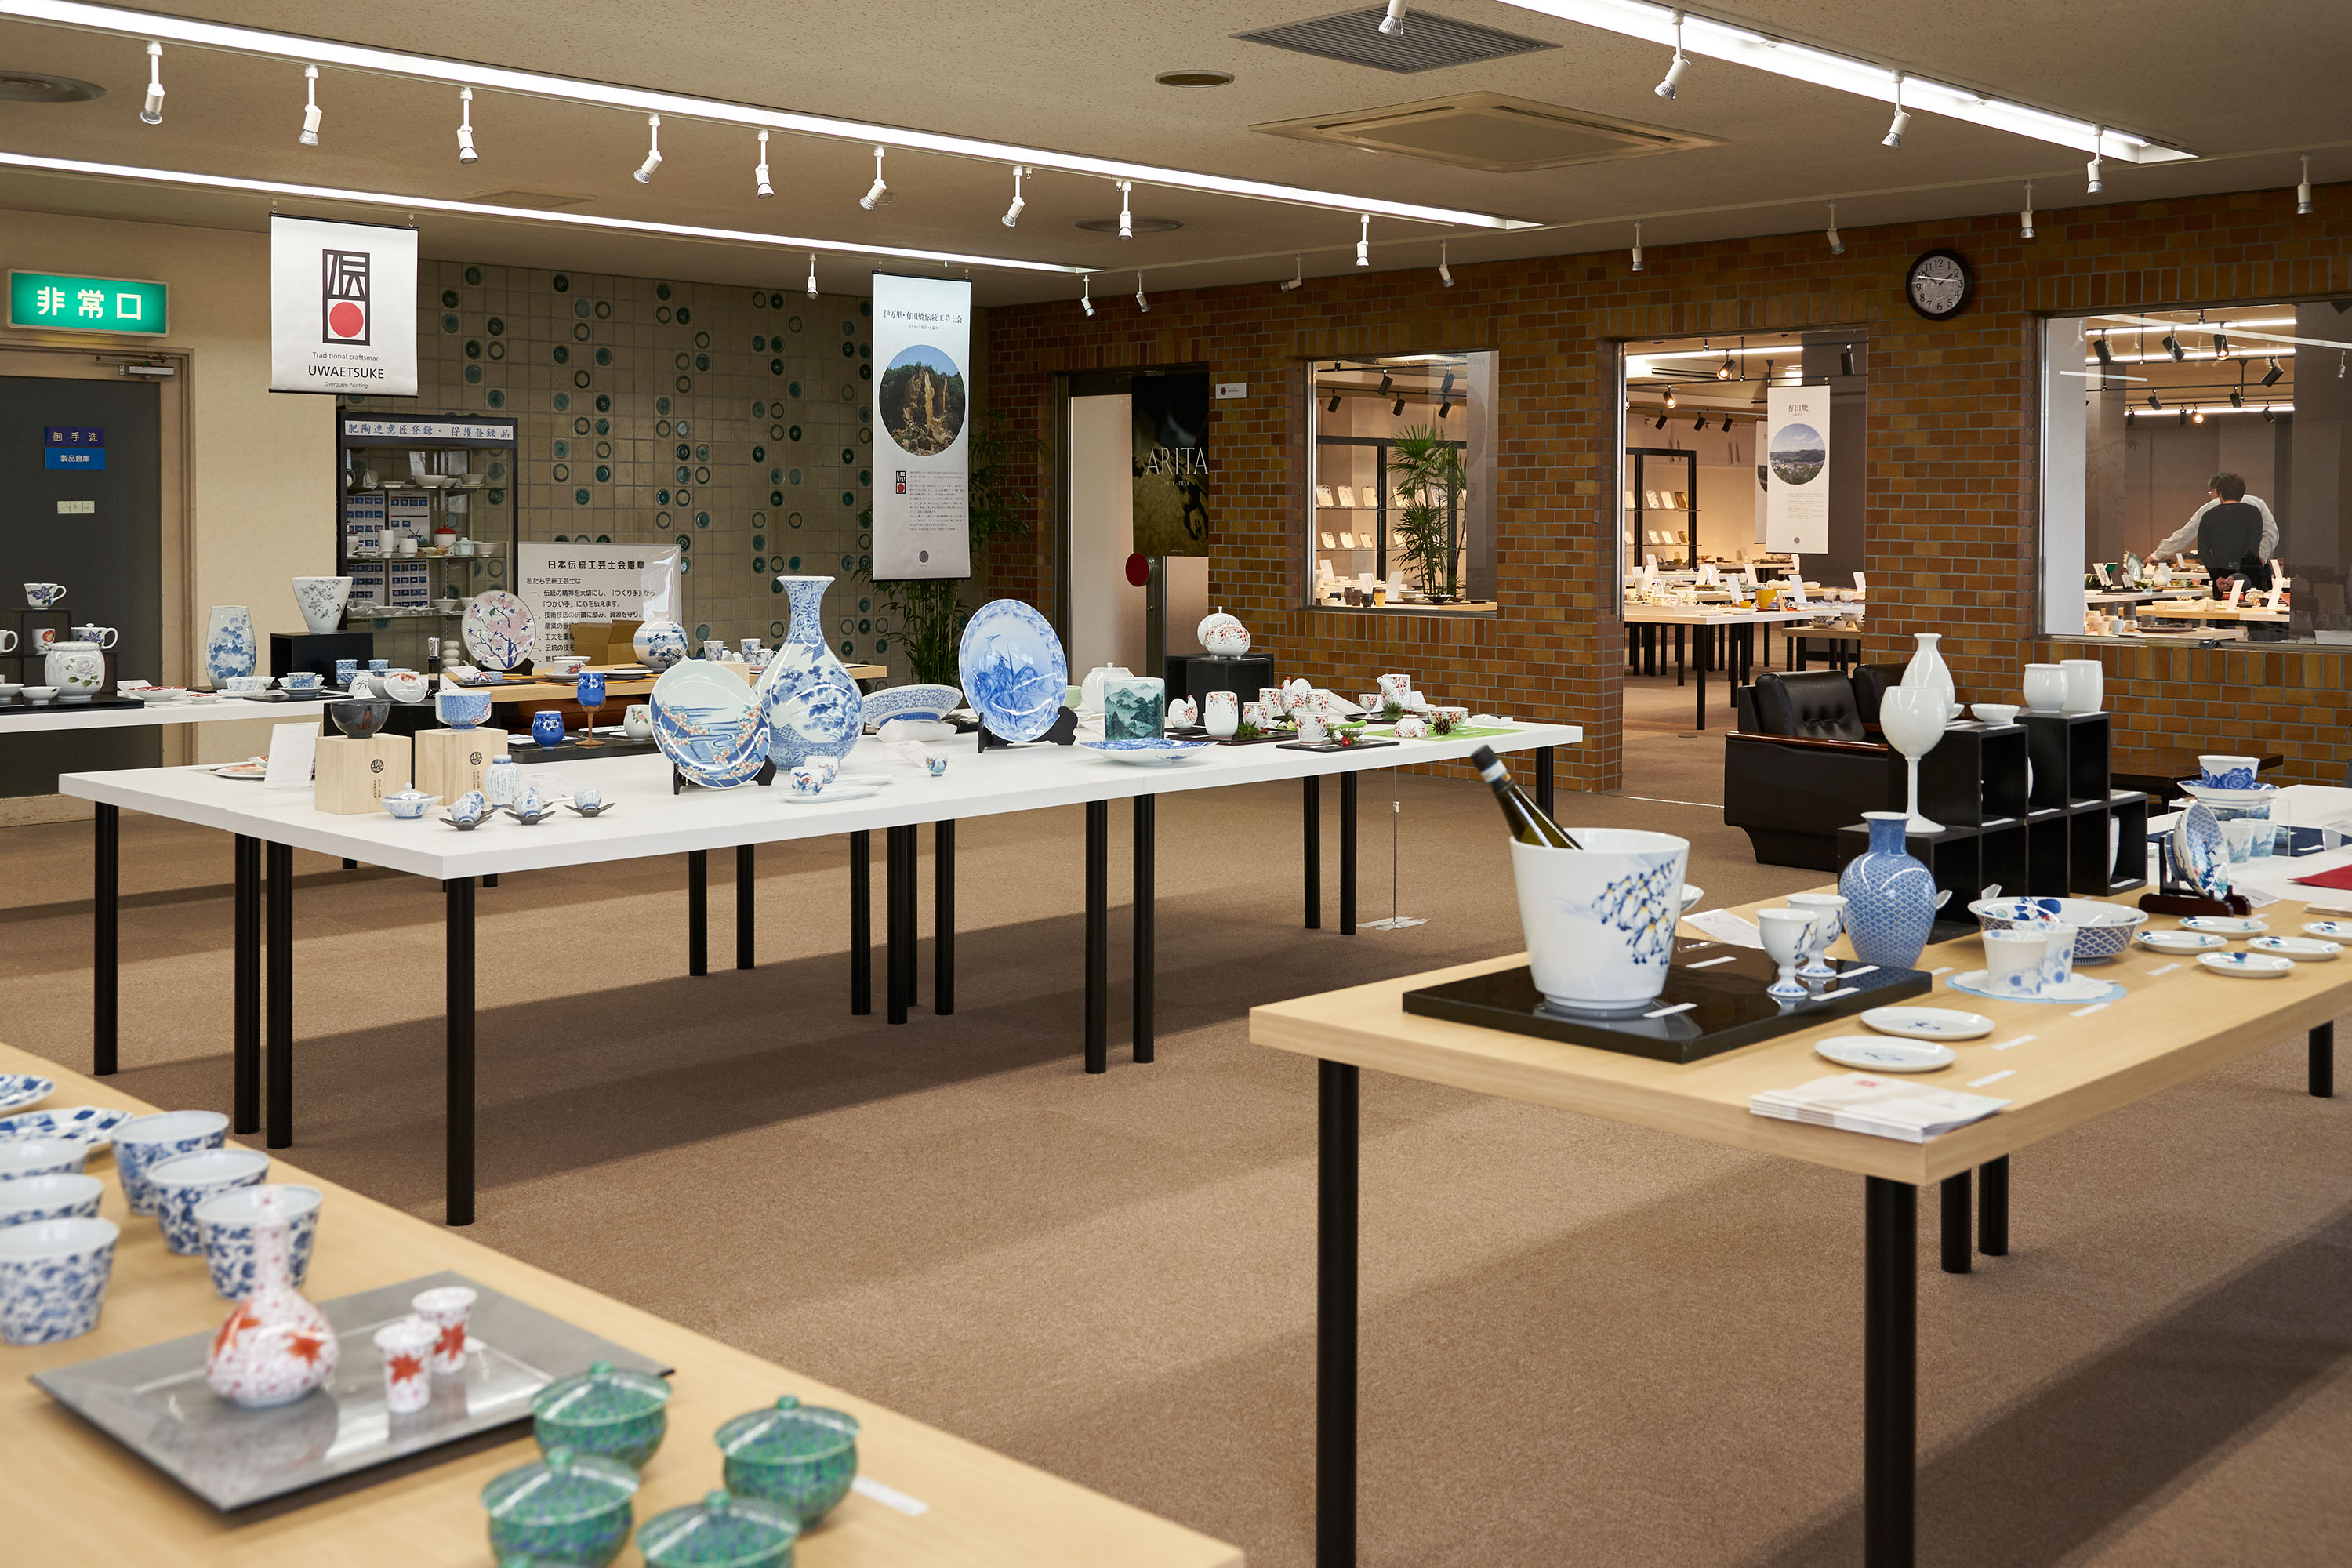 伊万里・有田焼伝統工芸士会会員の作品を常設展示・販売をしています。